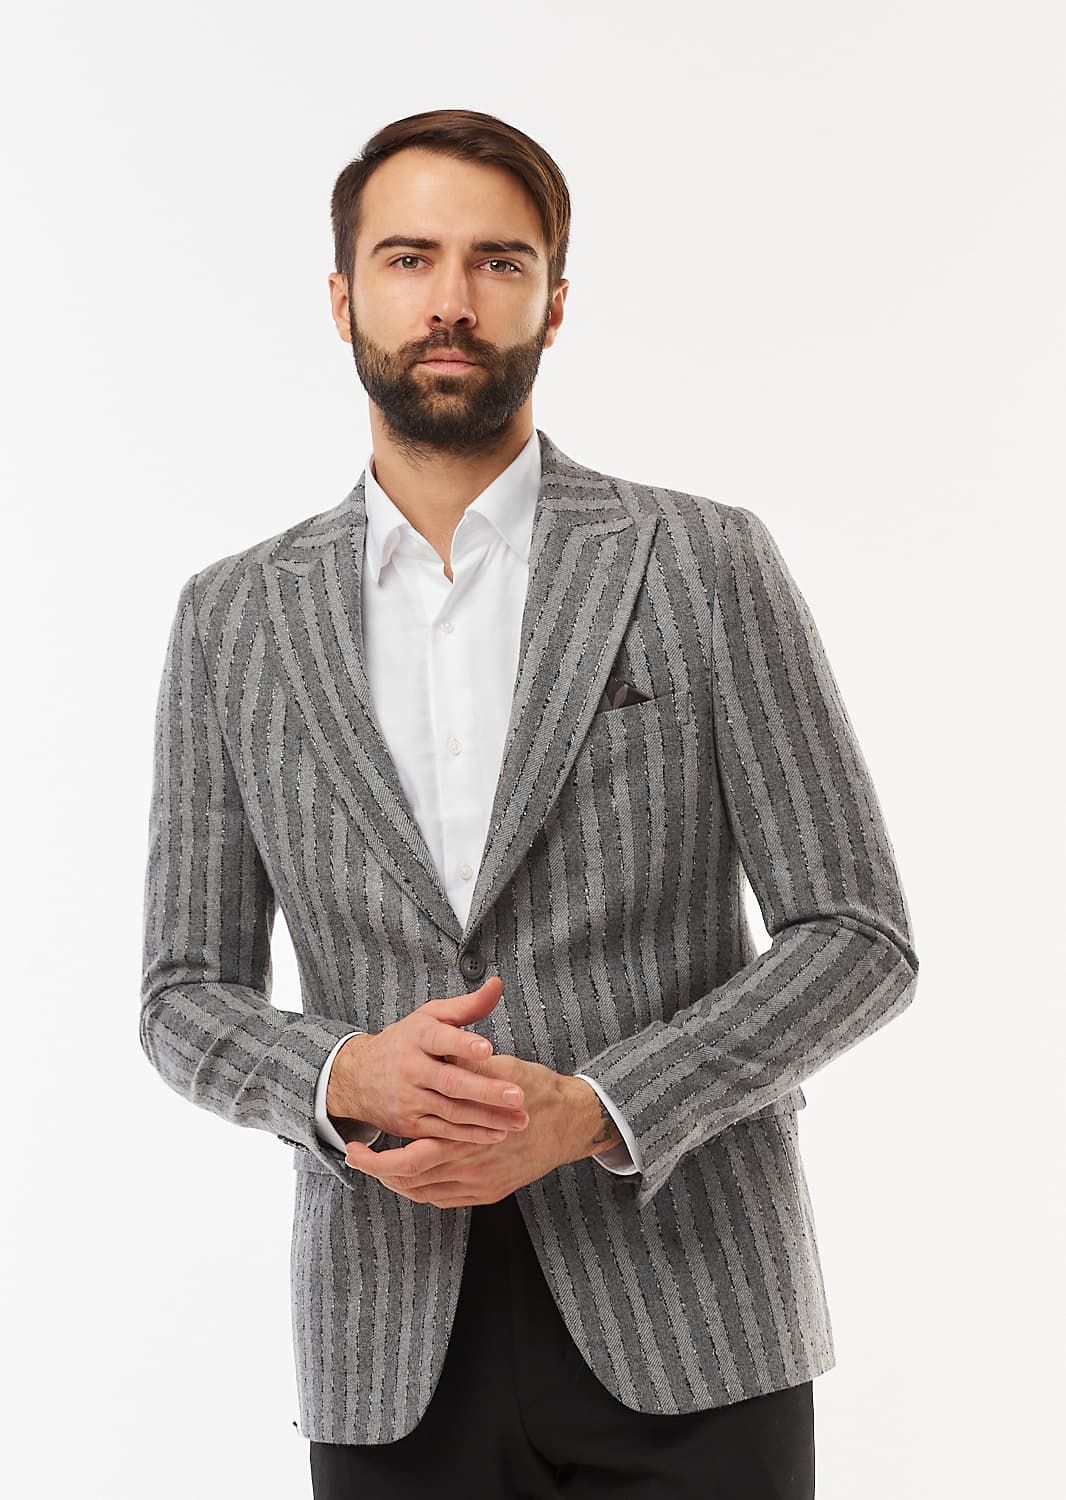 Пиджак шерстяной серый в полоску (46) PIZHON premium 9921-01, размер 46